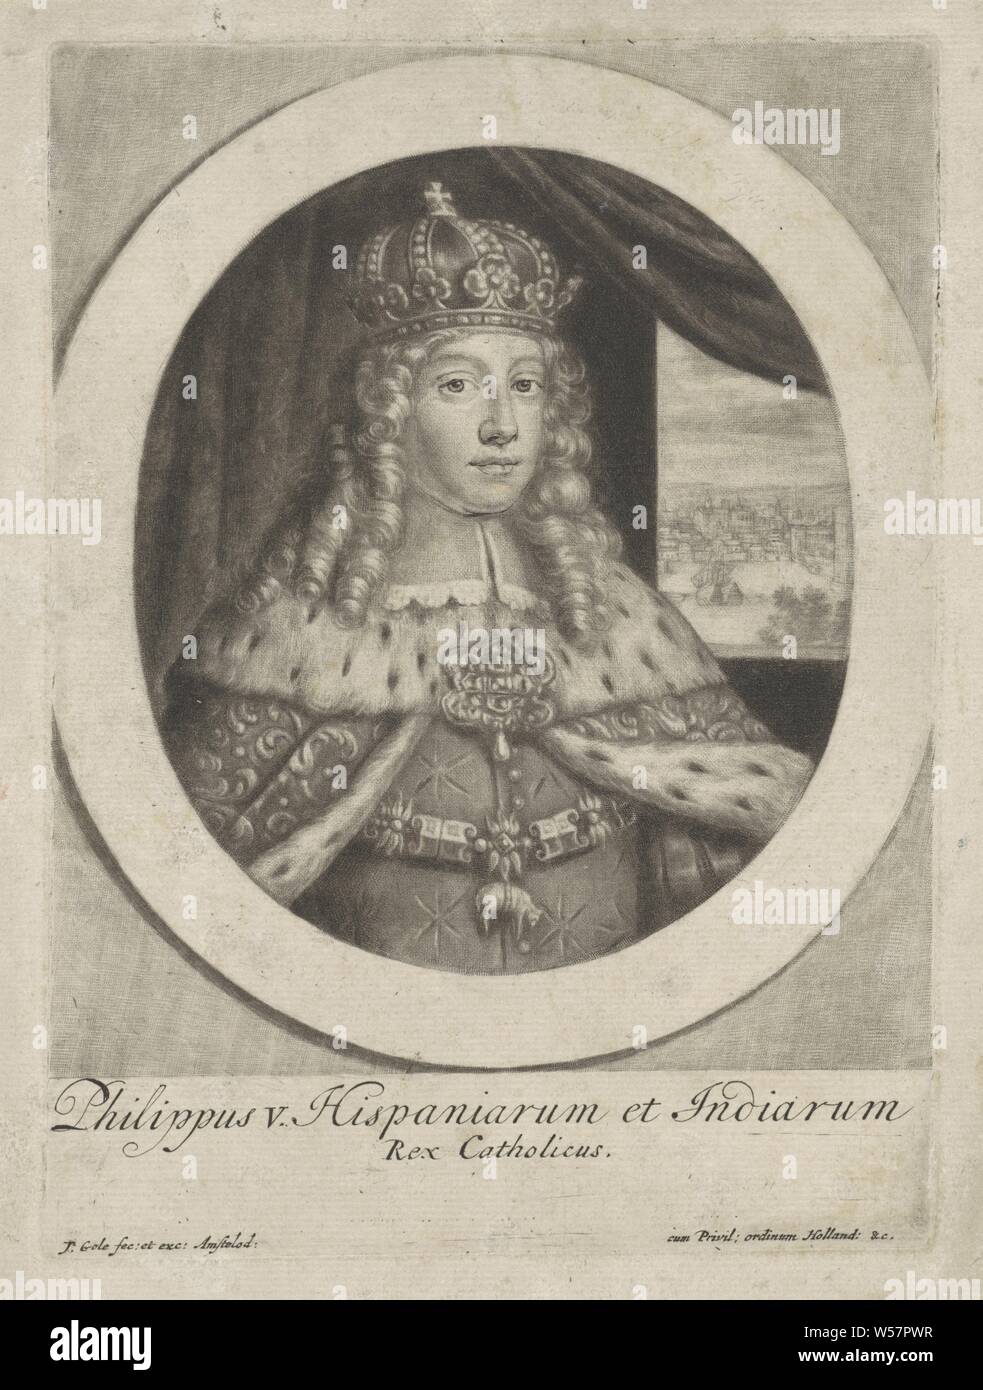 Portrait de Philippe V, Roi d'Espagne, le jeune duc Philippe d'Anjou, à partir de 1700 Le roi Philippe V d'Espagne. Il porte une couronne, le manteau de couronnement et d'une chaîne avec l'ordre signe de l'ordre de la Toison d'or, ordre de chevalerie de la Toison d'or, couronne (symbole de la souveraineté), manteau, robe, robe (symbole de la souveraineté), Philippe V (roi de l'Espagne), Jacob Gole (mentionné sur l'objet), Amsterdam, 1700 - 1724, papier, gravure, h 190 mm × W 139 mm Banque D'Images